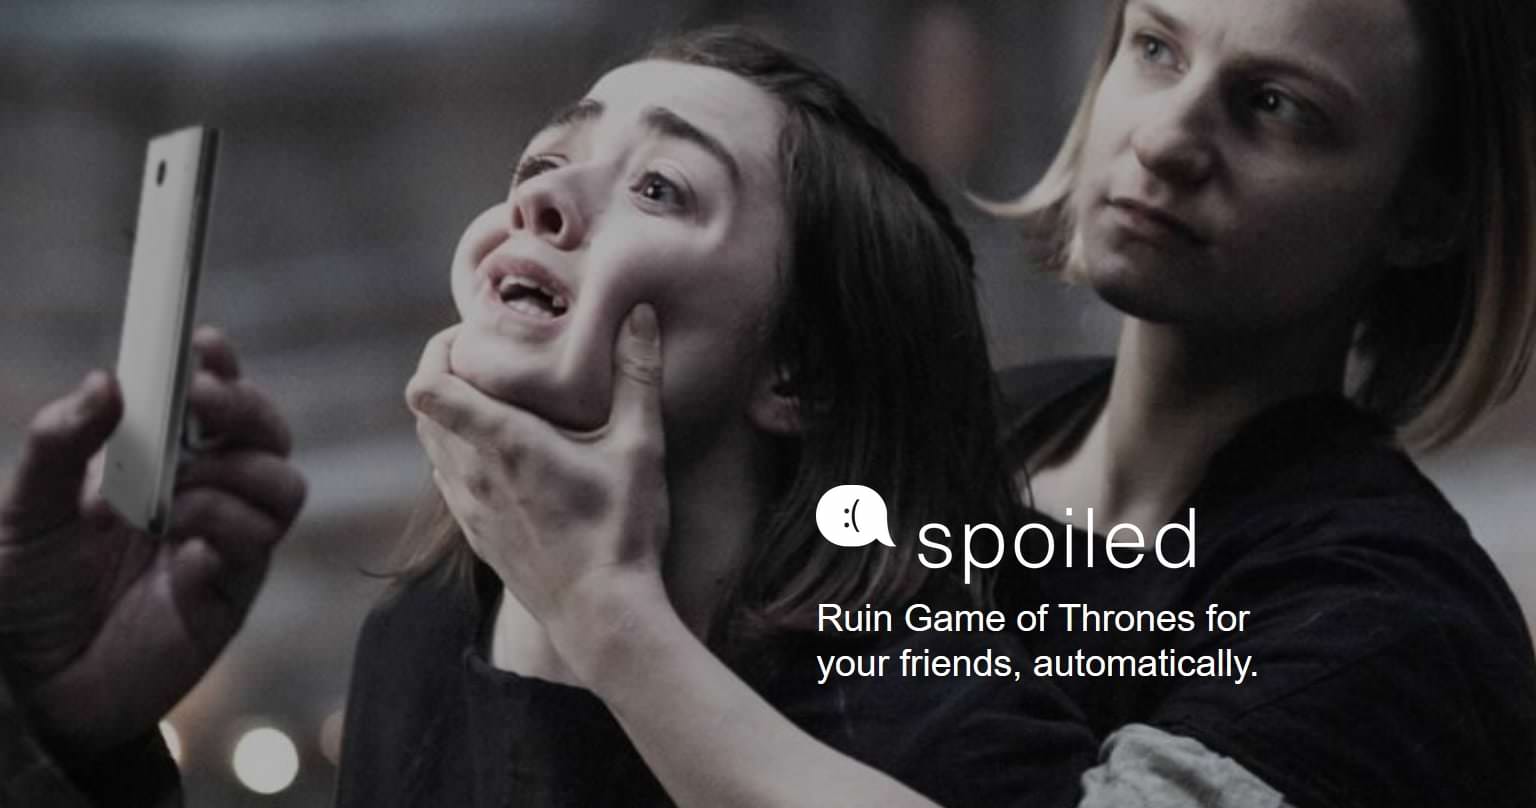 เว็บไซต์เพื่อคนที่คุณเกลียด รับสปอยล์ Game of Thrones ตอนใหม่ให้ใครก็ตามในราคา 0.99 เหรียญ 1